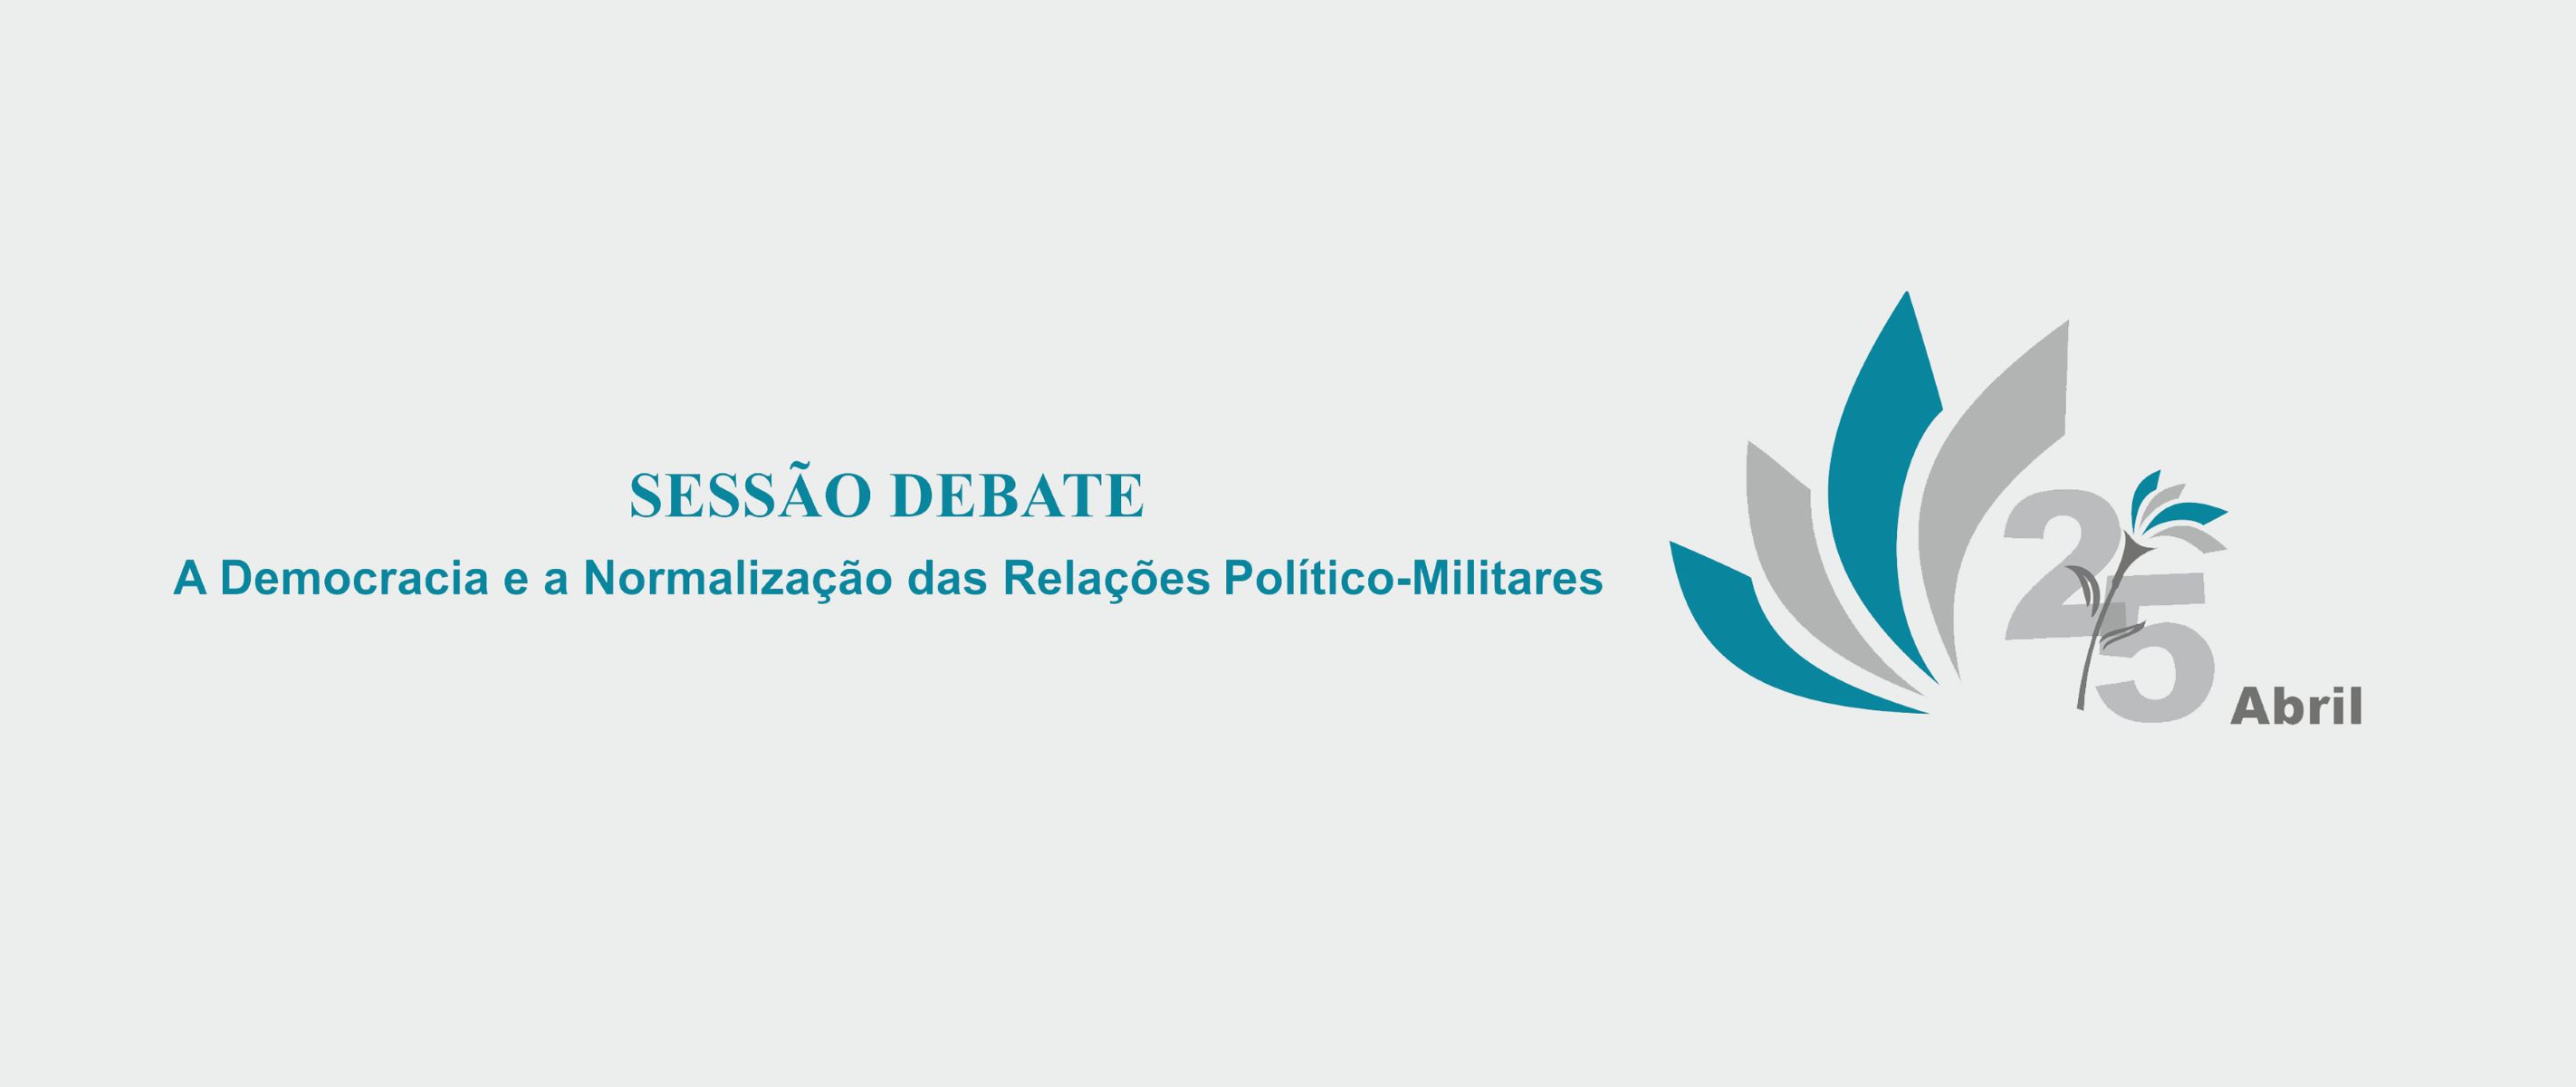 Sessão Debate: "A Democracia e a Normalização das Relações Político-Militares"